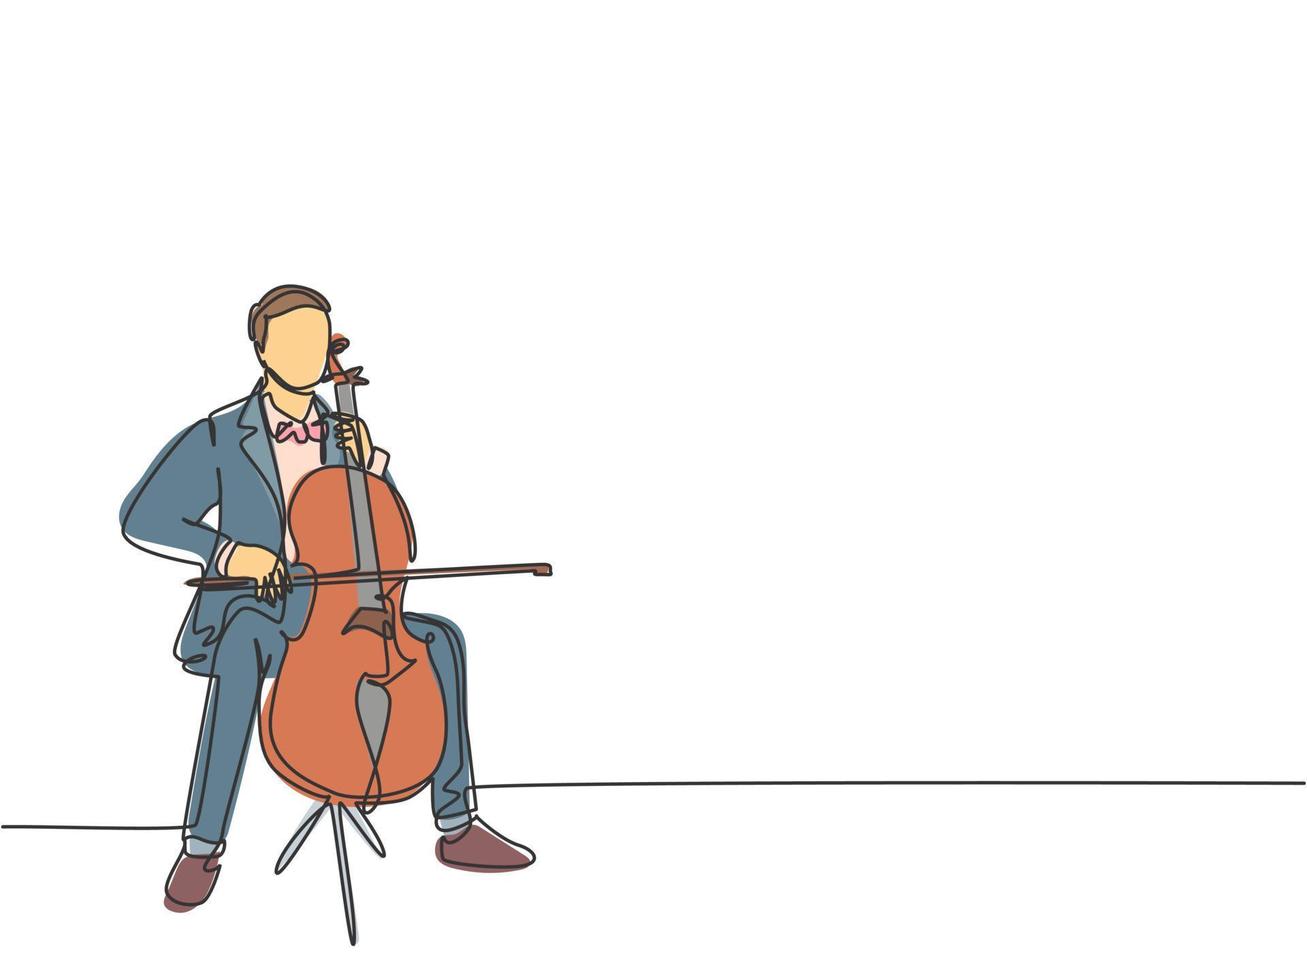 één enkele lijntekening van jonge gelukkige mannelijke cellist die cello speelt op klassiek orkesttheater. muzikant kunstenaar prestaties concept continu lijn tekenen grafisch ontwerp vectorillustratie vector